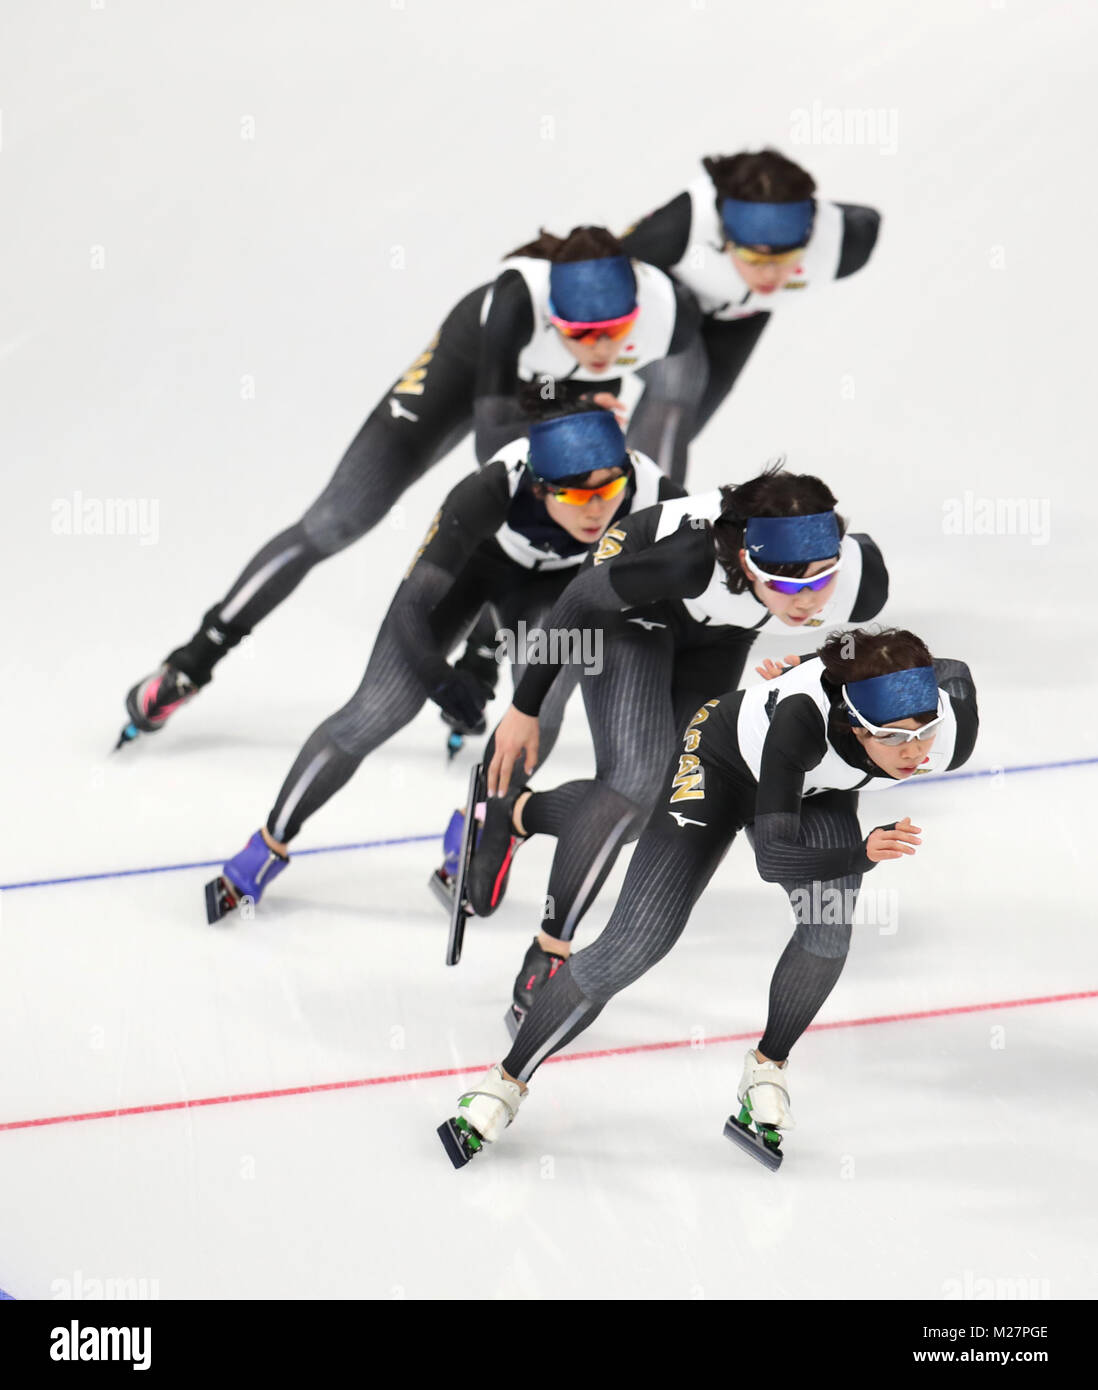 Les membres de l'équipe japonaise de patinage de vitesse s'entraînent lors d'une journée de prévisualisation à l'ovale Gangneung avant les Jeux Olympiques d'hiver de PyeongChang en Corée du Sud en 2018. APPUYEZ SUR ASSOCIATION photo. Date de la photo: Mardi 6 février 2018. Voir l'histoire de PA JEUX OLYMPIQUES d'hiver. Le crédit photo devrait se lire comme suit : Mike Egerton/PA Wire. Banque D'Images